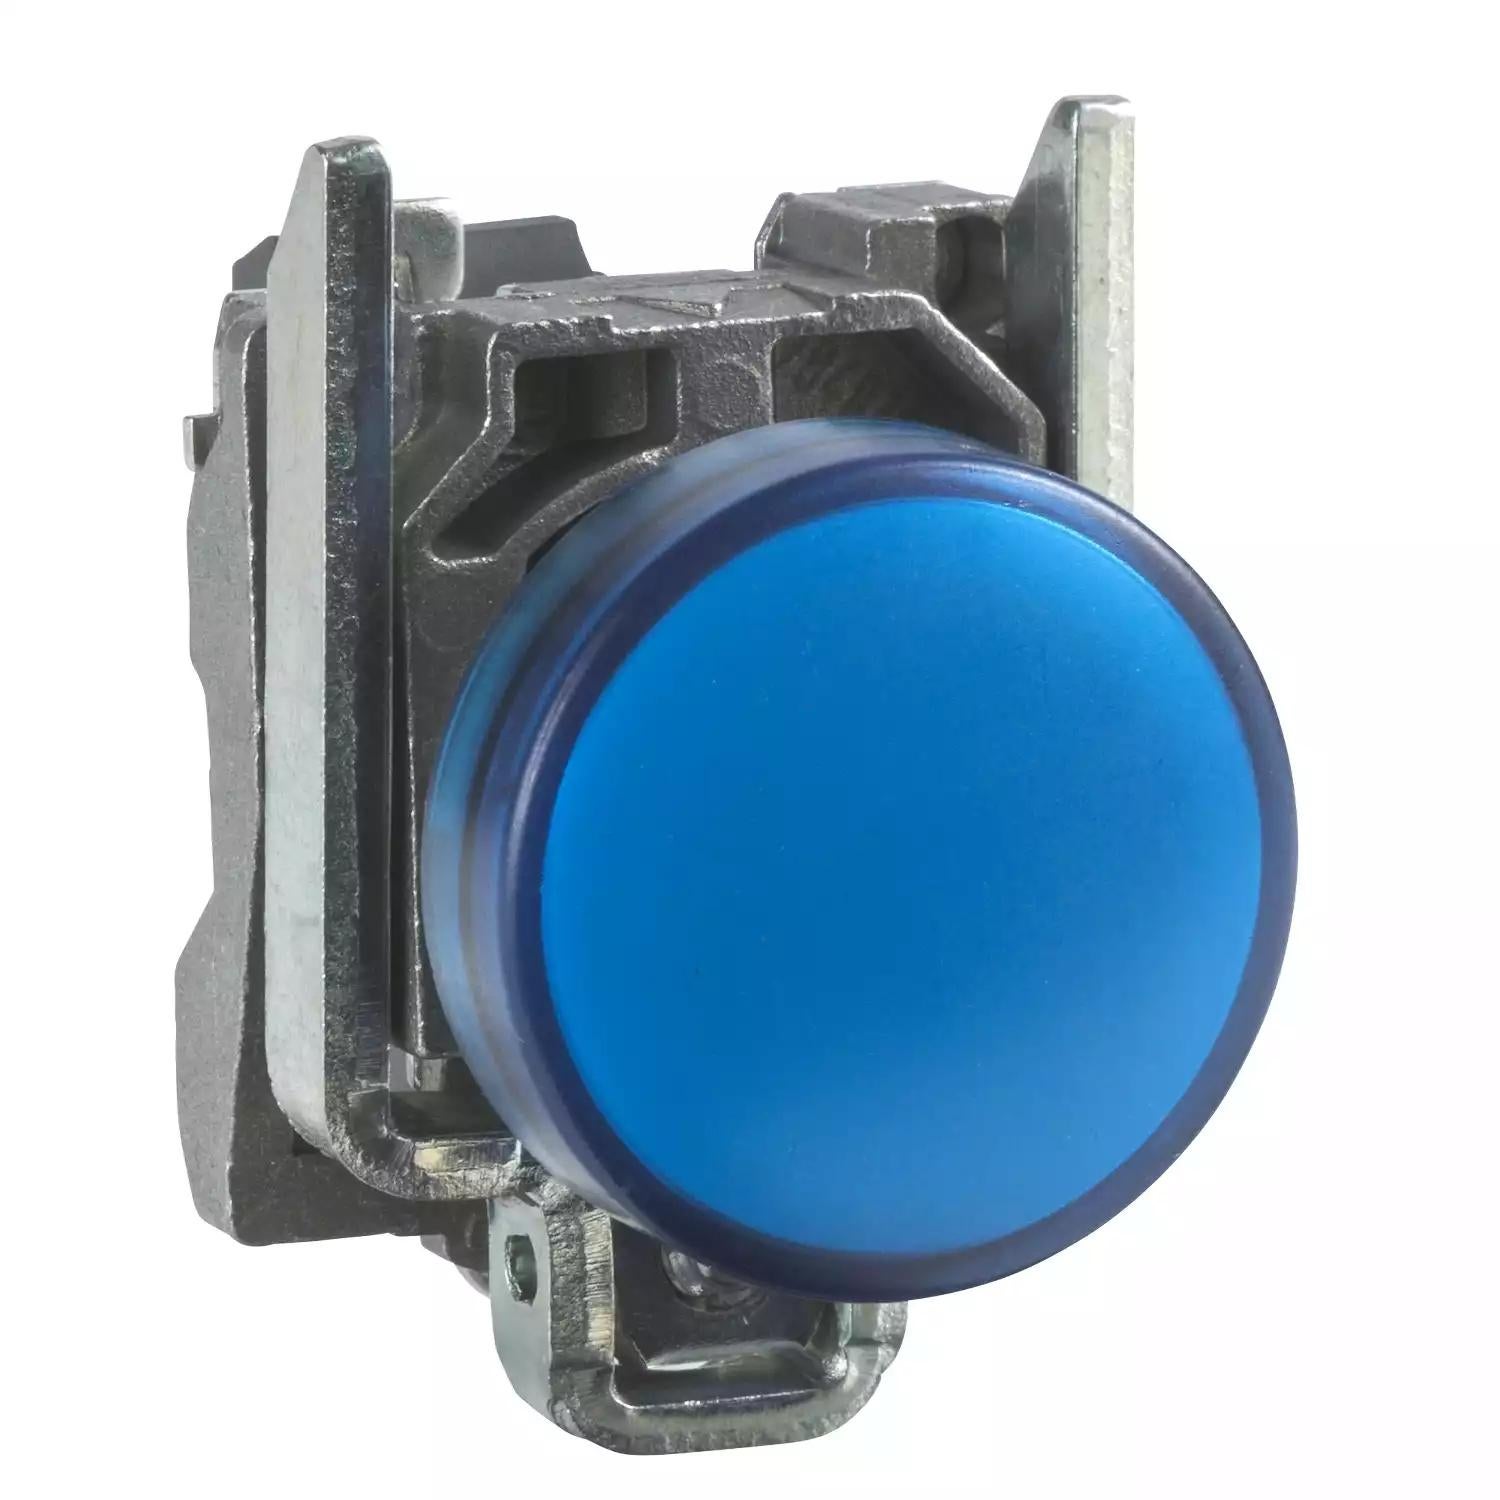 Harmony XB4, Pilot light, metal, blue, Ø22, plain lens with integral LED, 230...240 VAC